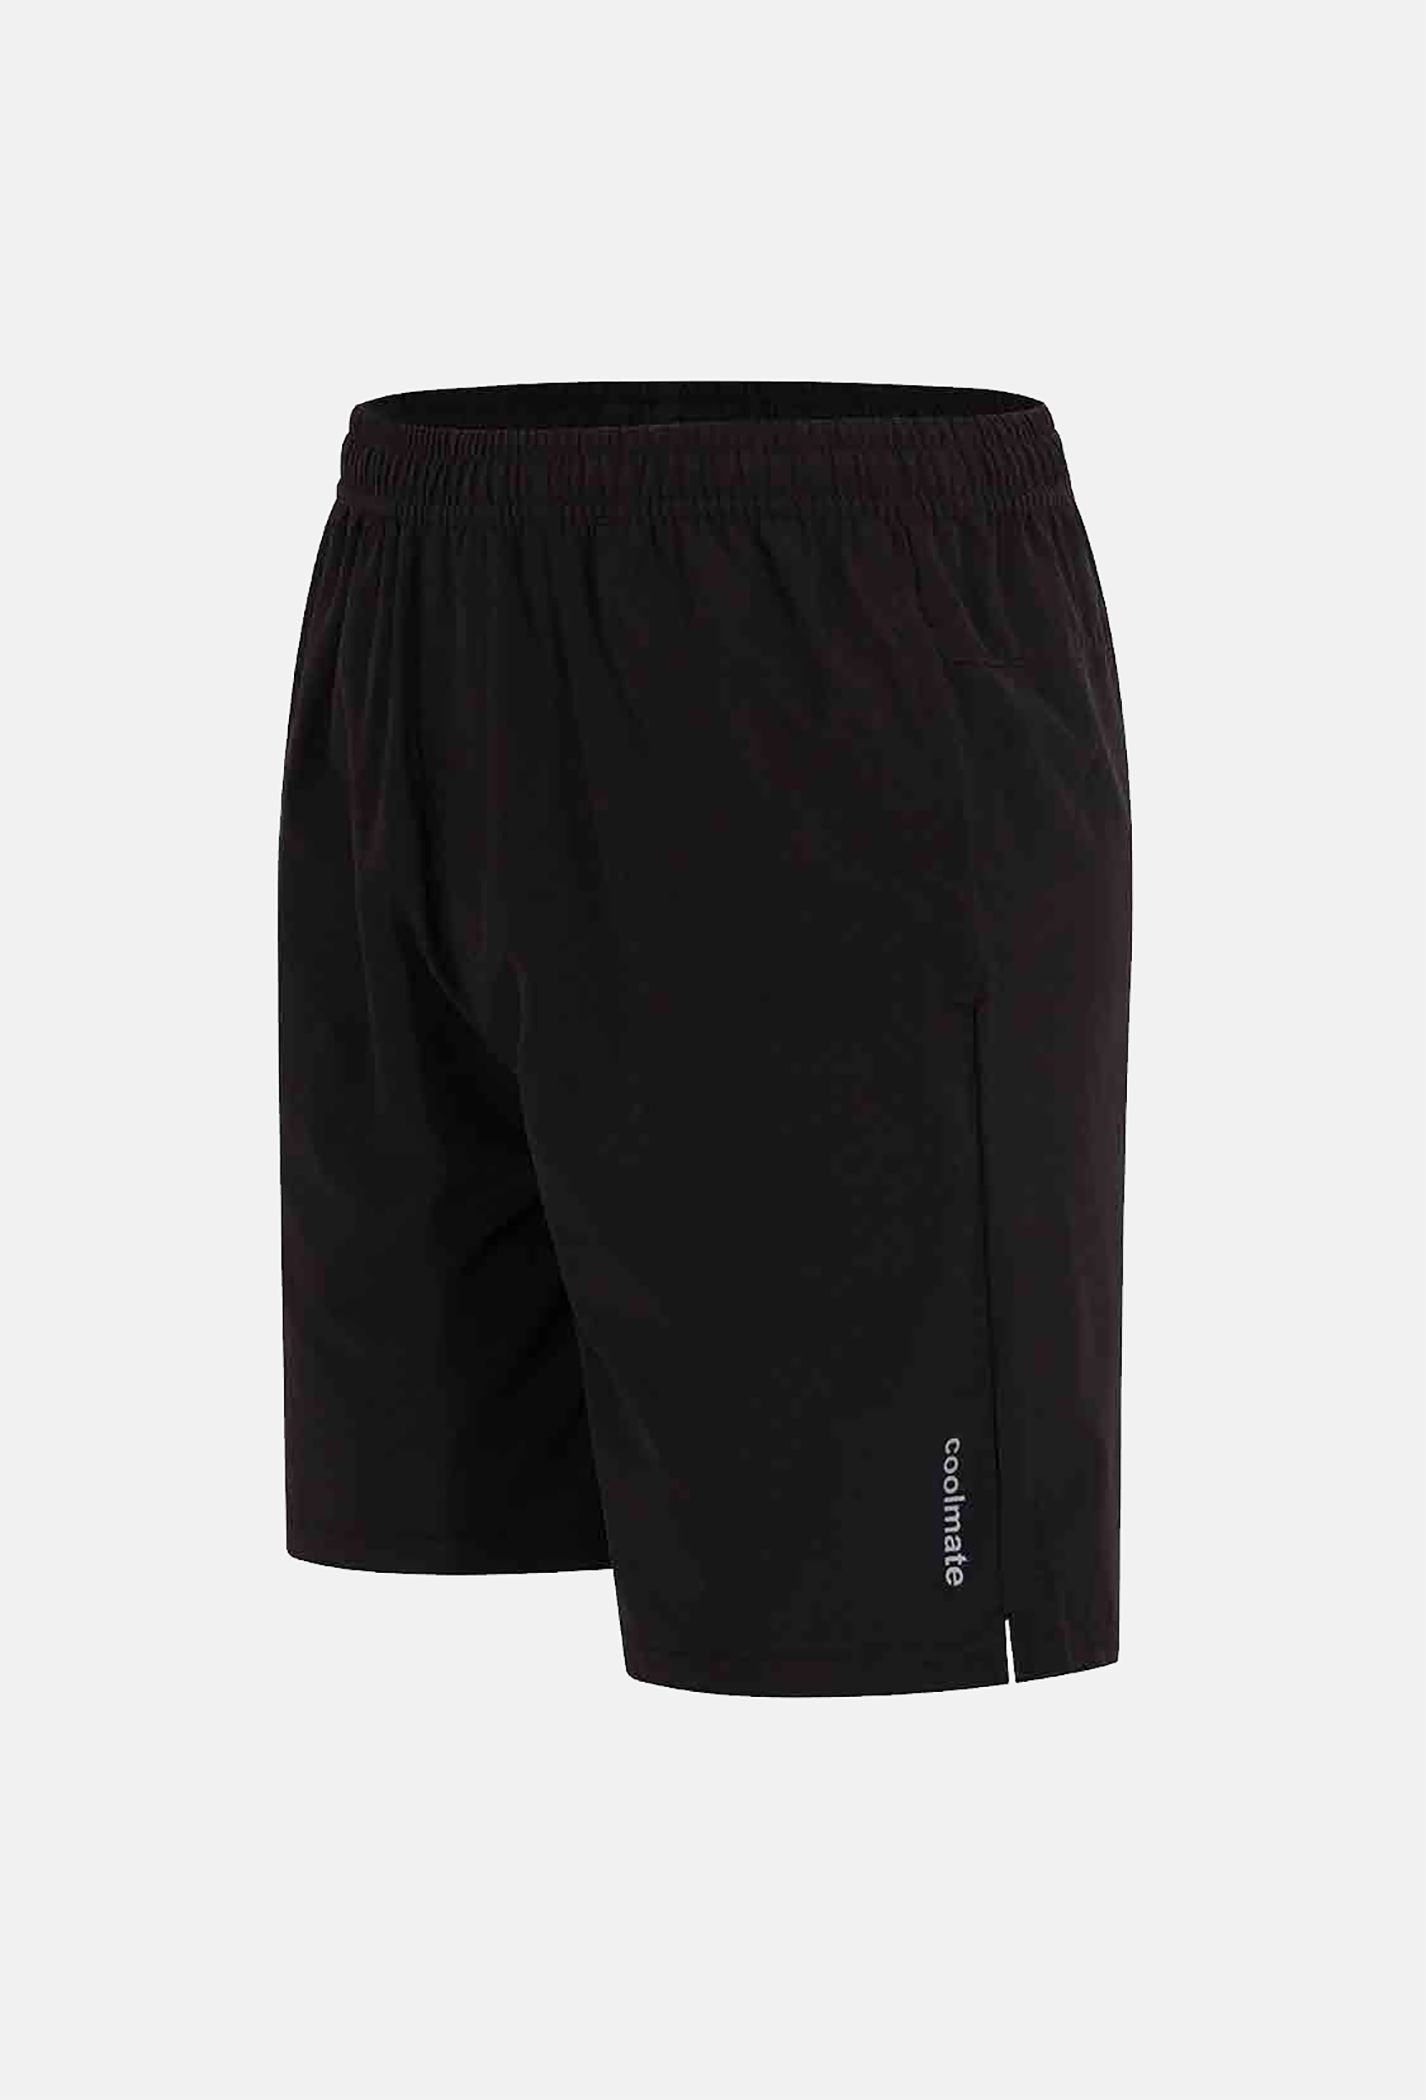 Quần thể thao nam Max Ultra Shorts (có thêm túi khoá sau)  2